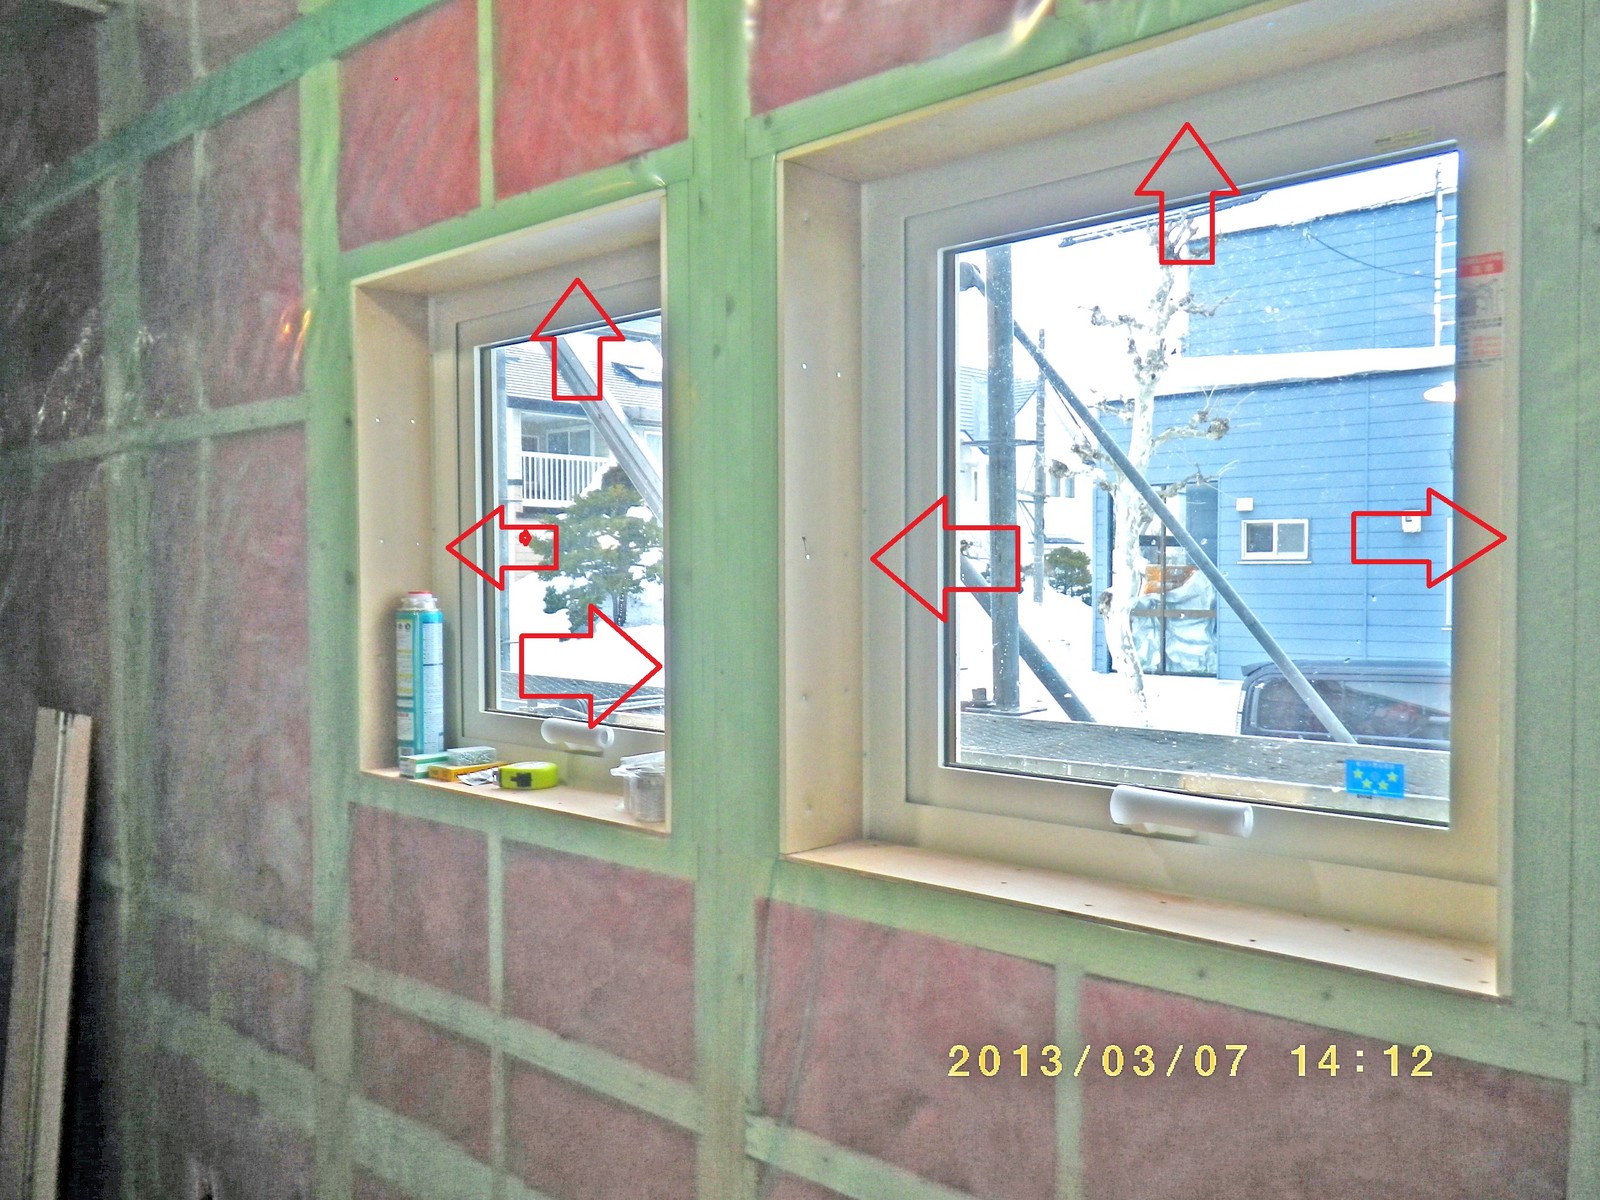 窓廻り内壁の断熱強化 結露防止 の施工方法を開発しましたー続報 勇和建設の社長が明かす 住まいづくりのウソ ホント